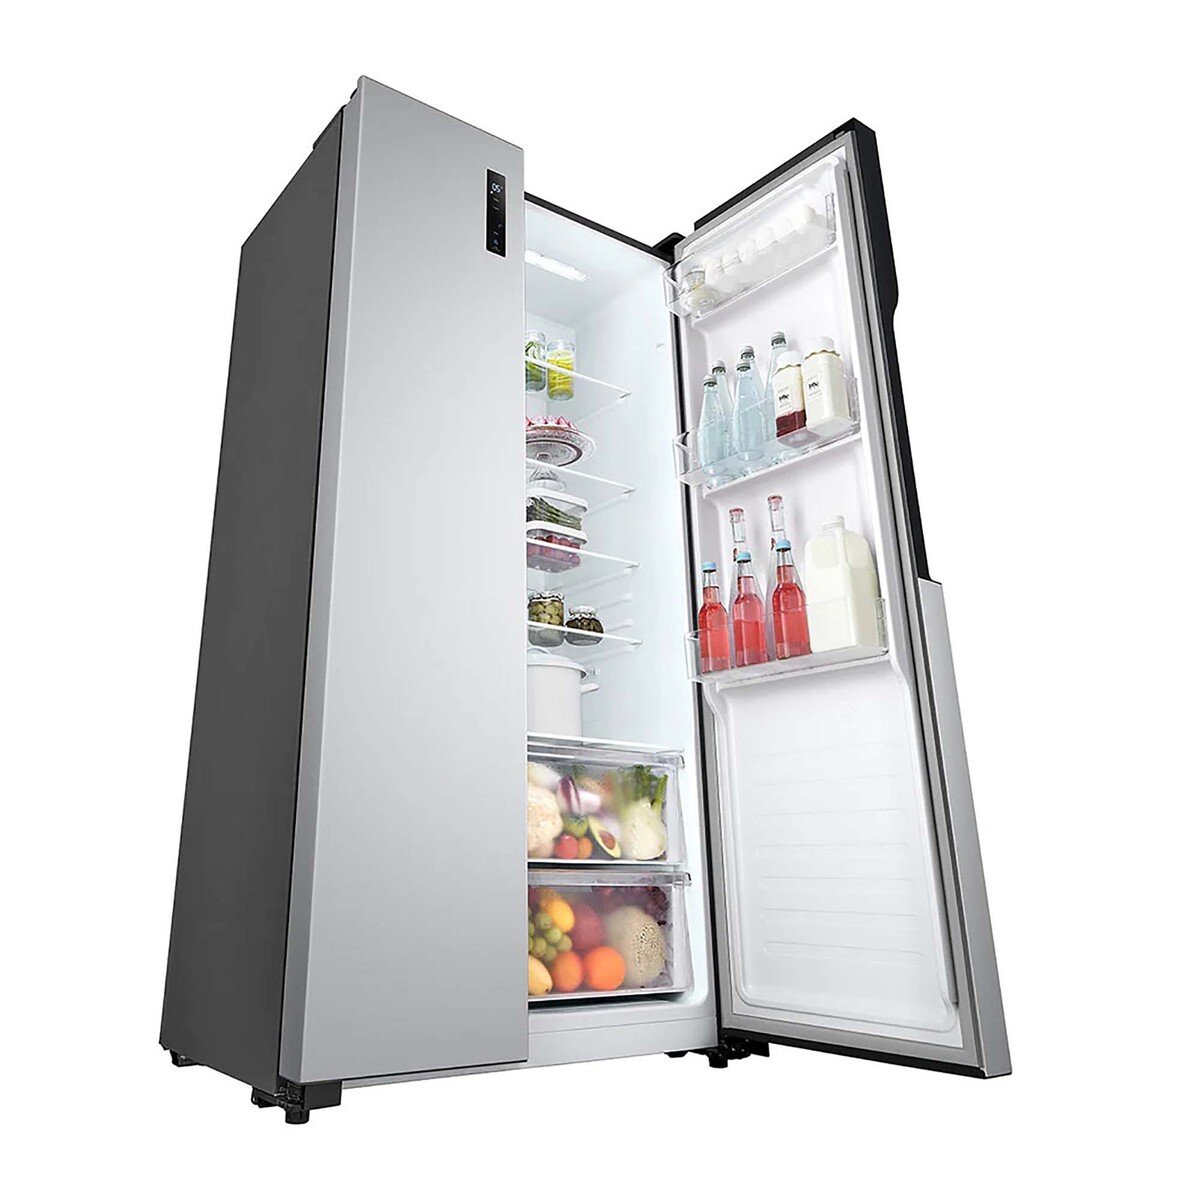 LG 509 L Side by Side Refrigerator, Silver, GRFB587PQAM